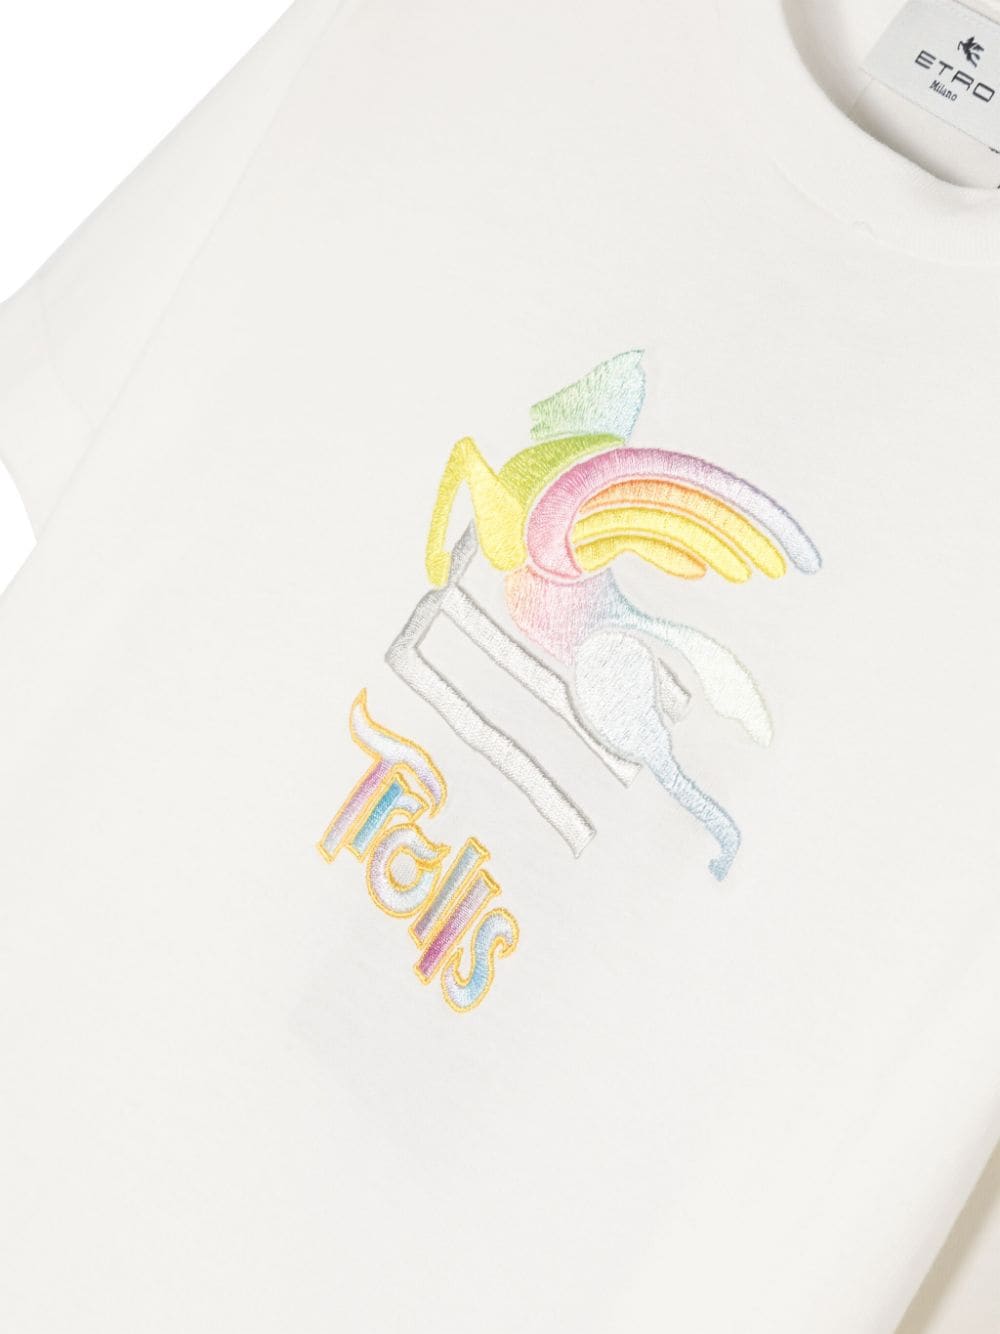 T-shirt enfant blanc/multicolore